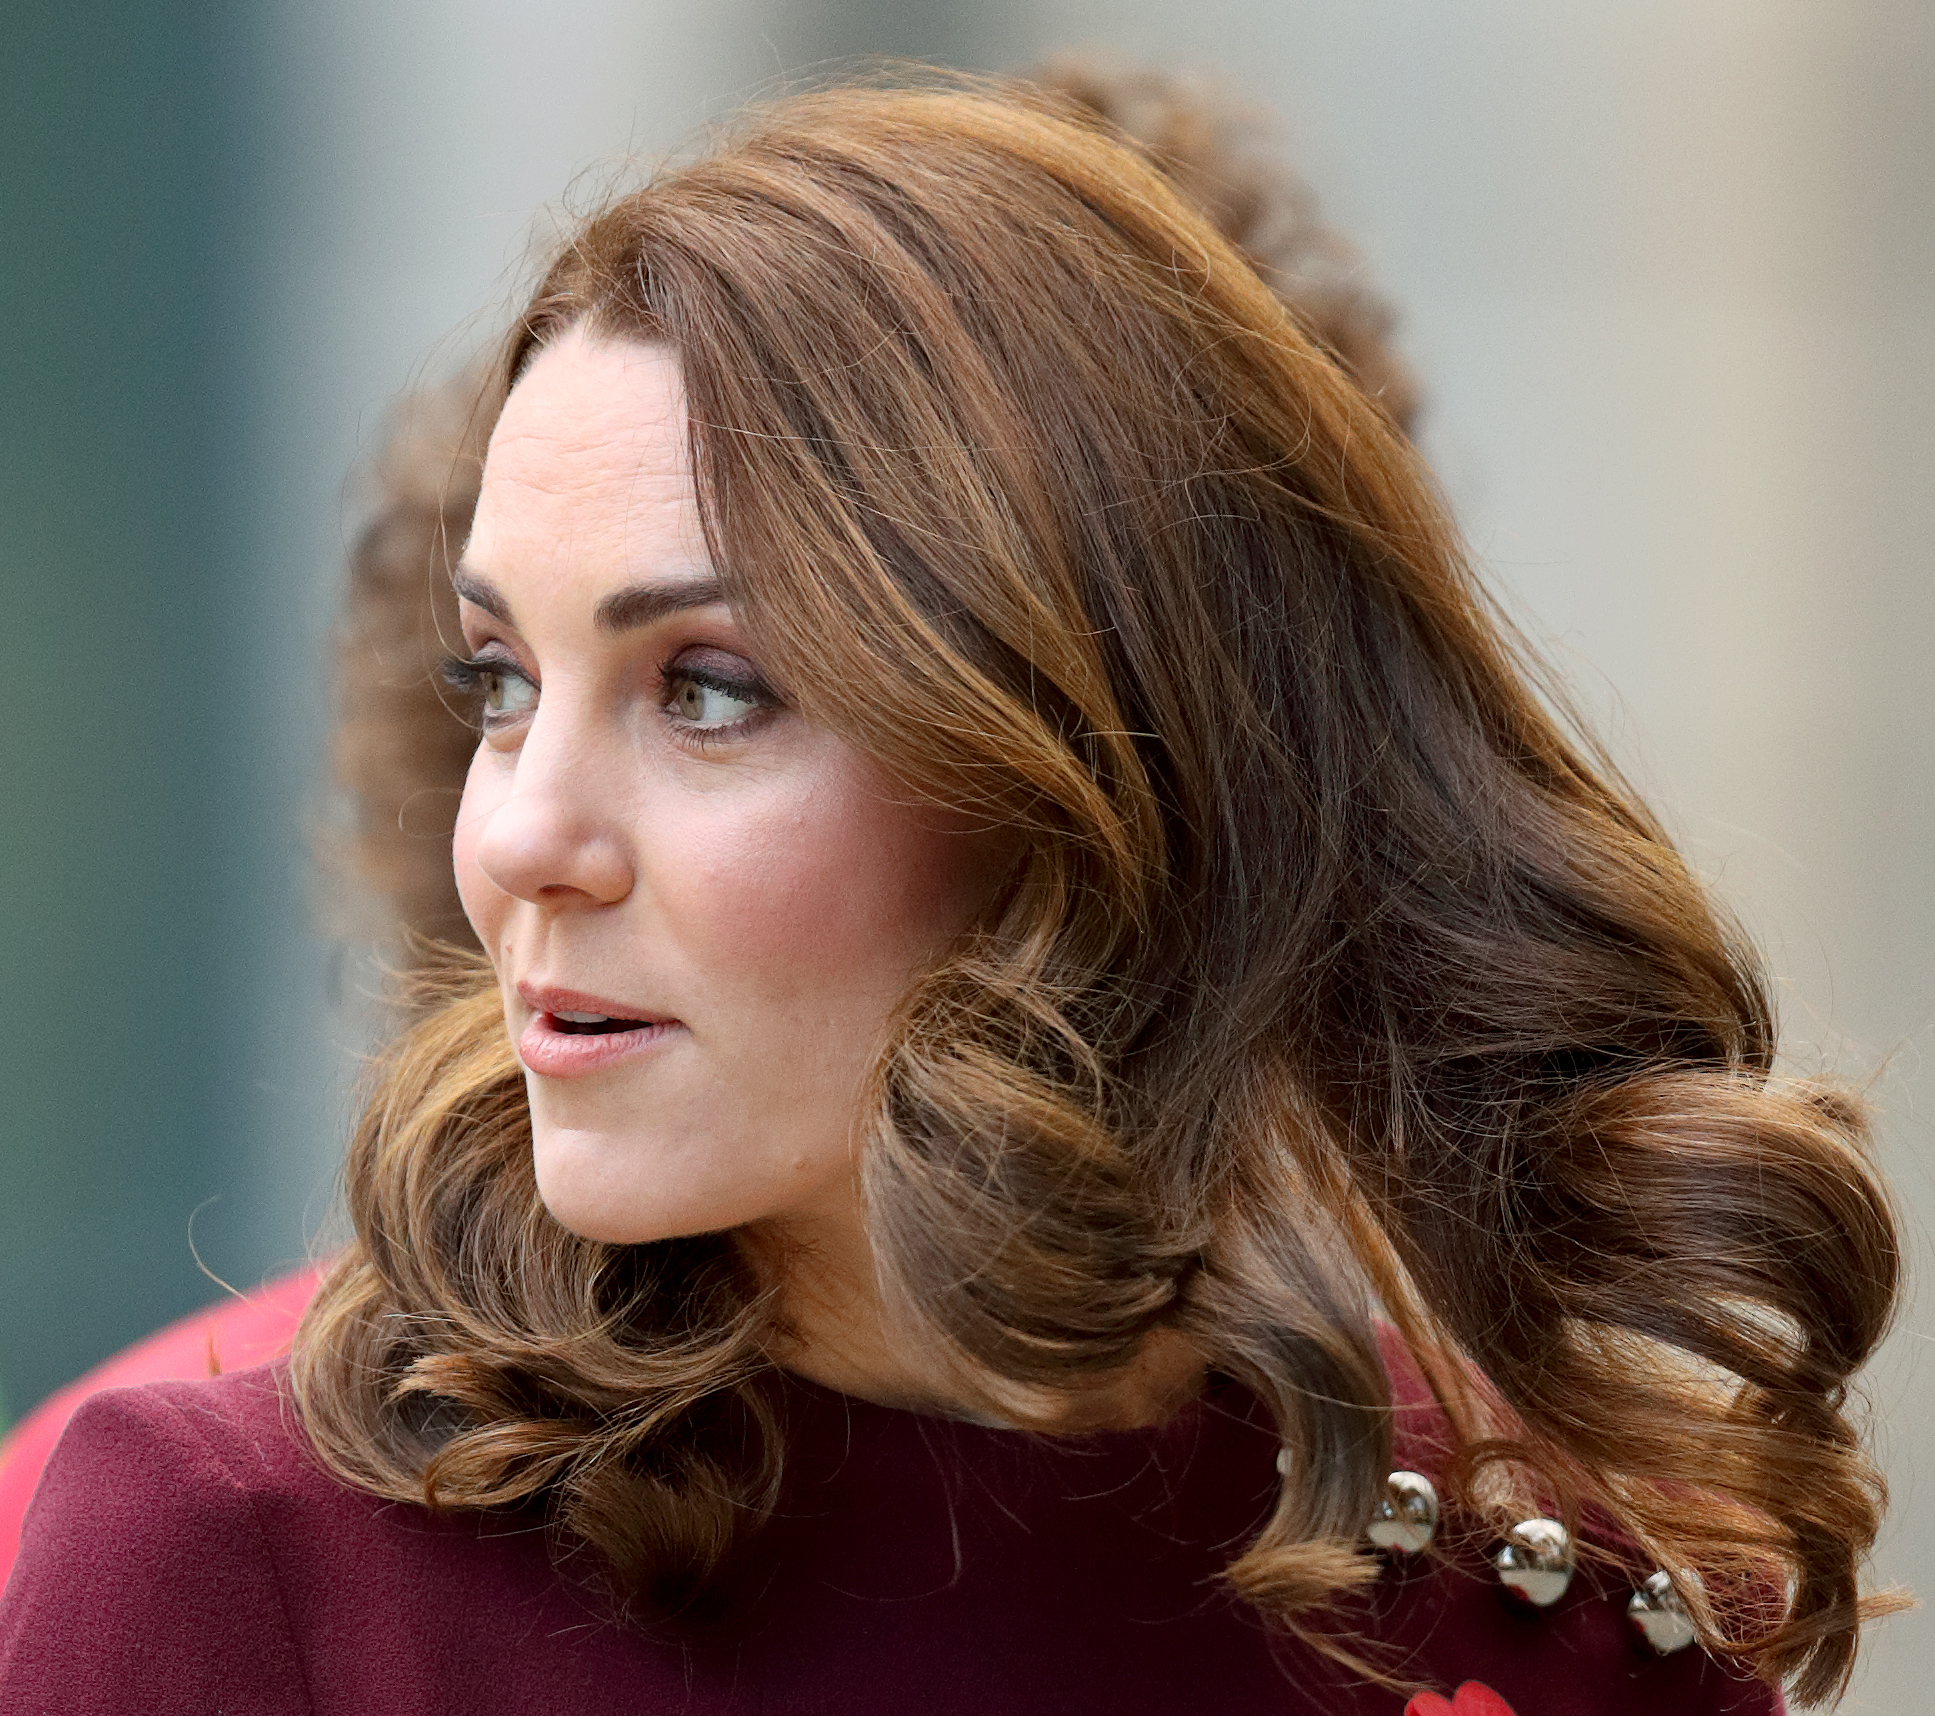 Prinzessin von Wales, Kate Middleton in London im Jahr 2017 | Quelle: Getty Images